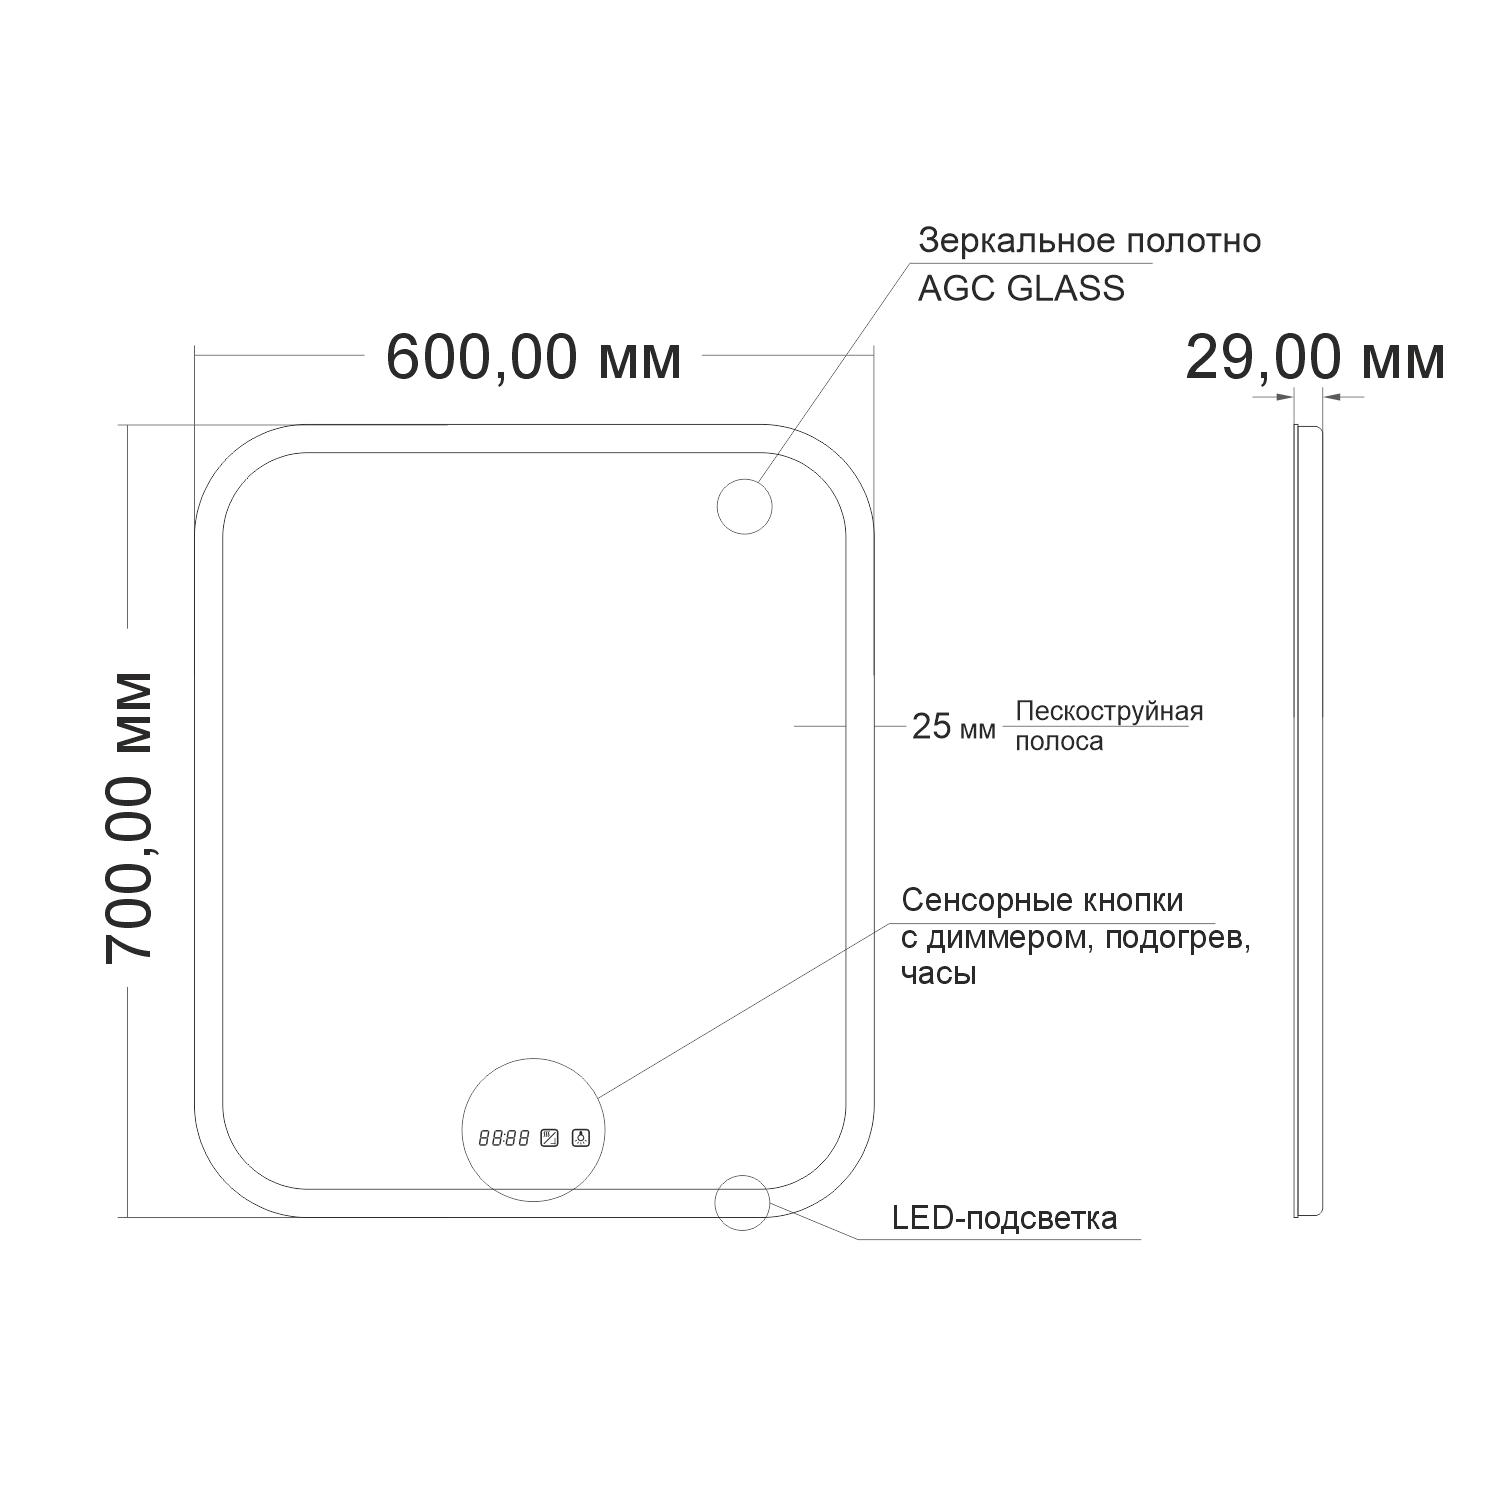 Зеркало MIXLINE "Стив-3" 600*700 (ШВ) сенсорный выключатель, часы + подогрев (553264) - фото 6